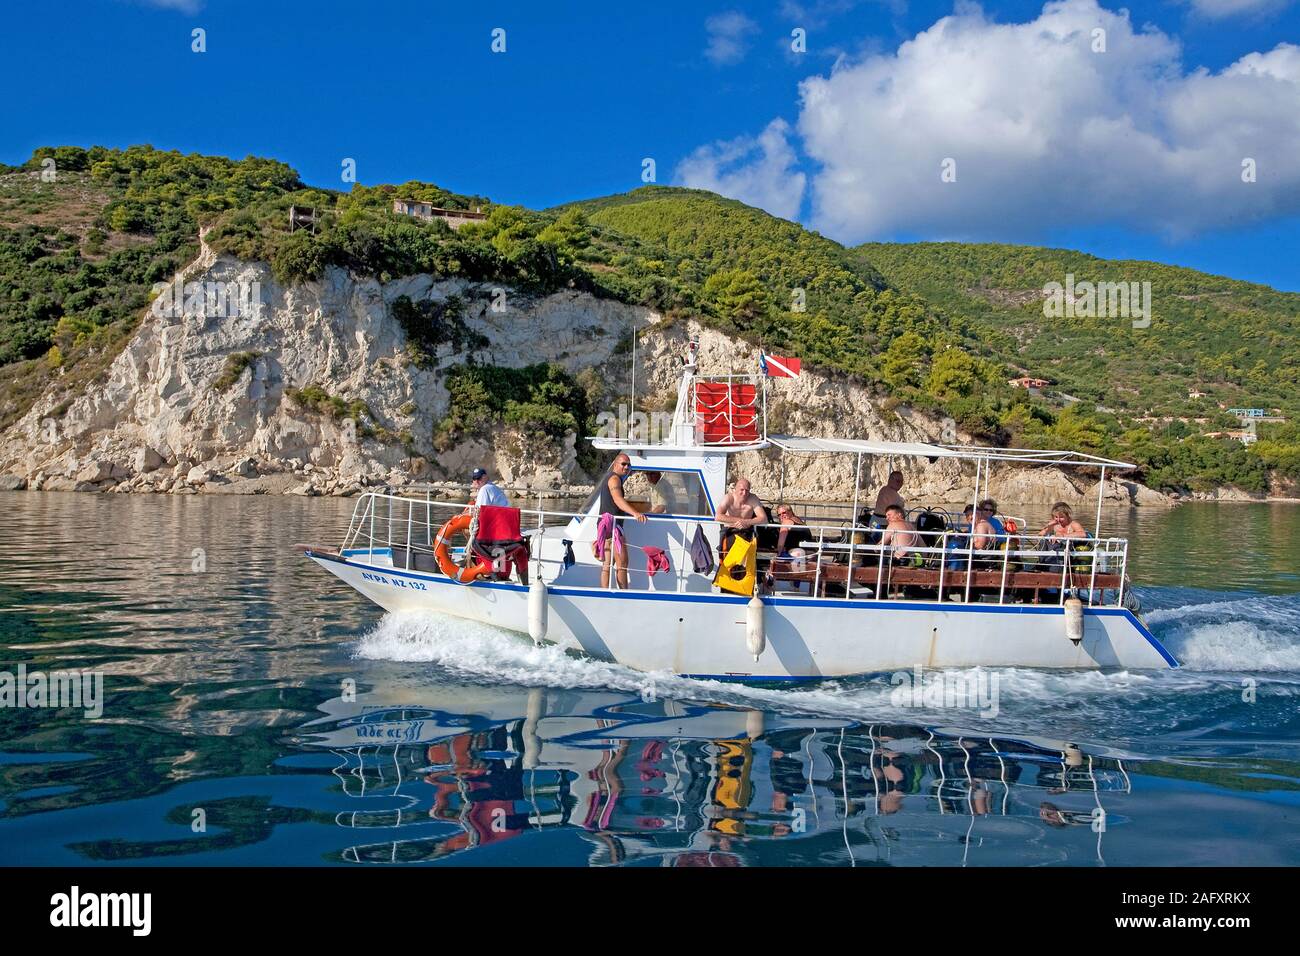 Tauchboot vor der Küste von Zakynthos, Griechenland | Dive boat at the rocky coast of Zakynthos island, Greece Stock Photo